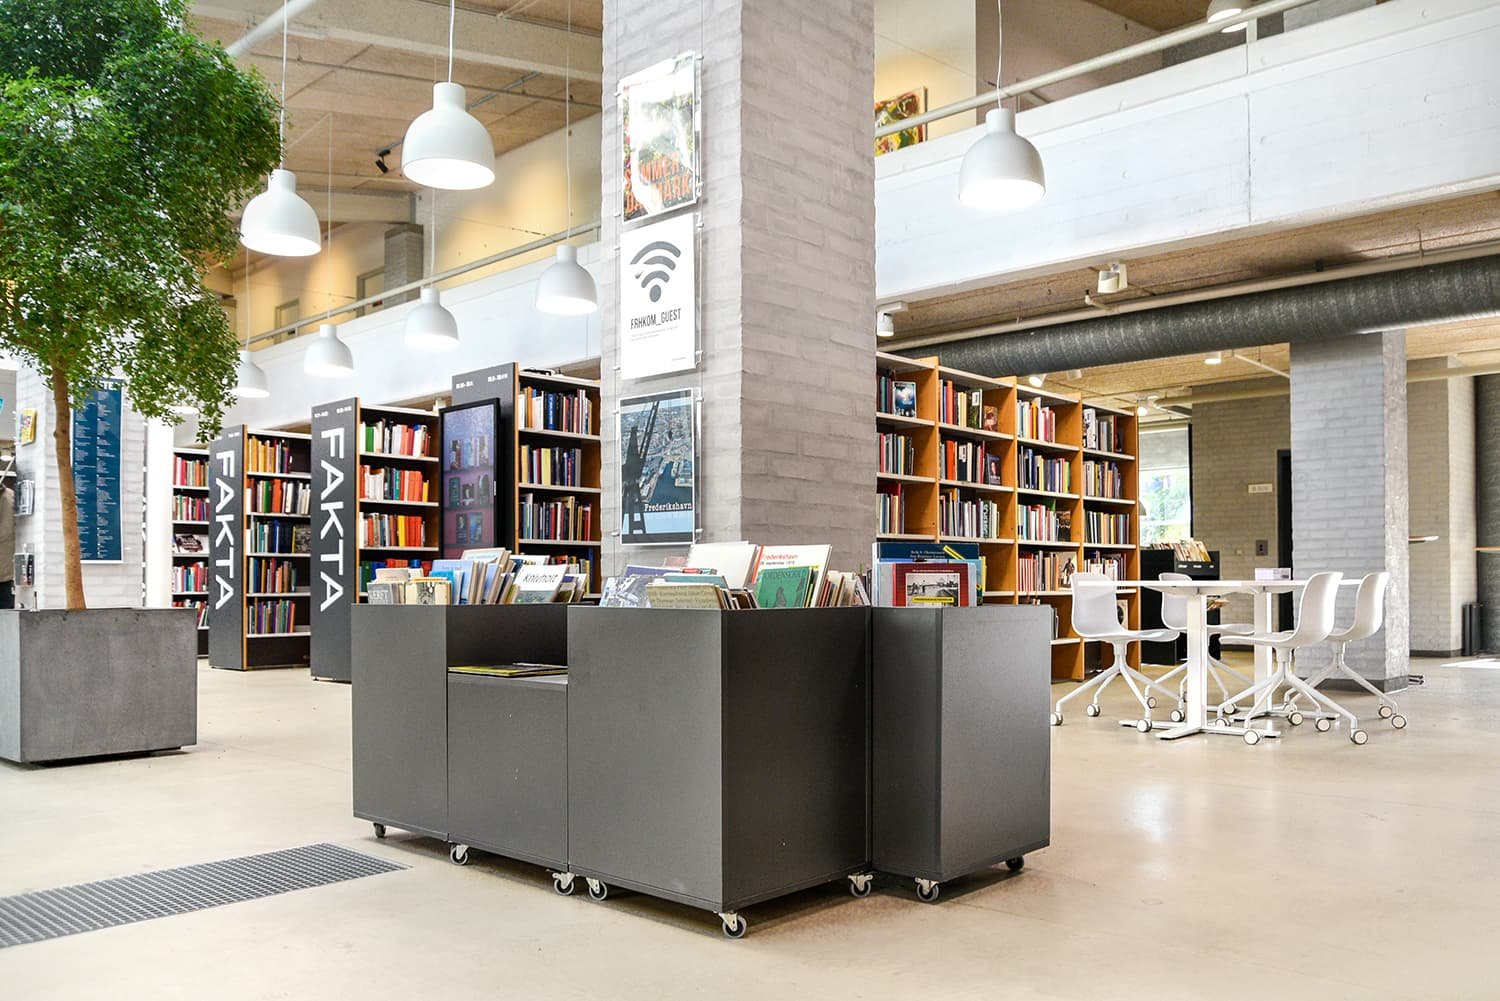 Frederikshavn bibliotek, Danmark